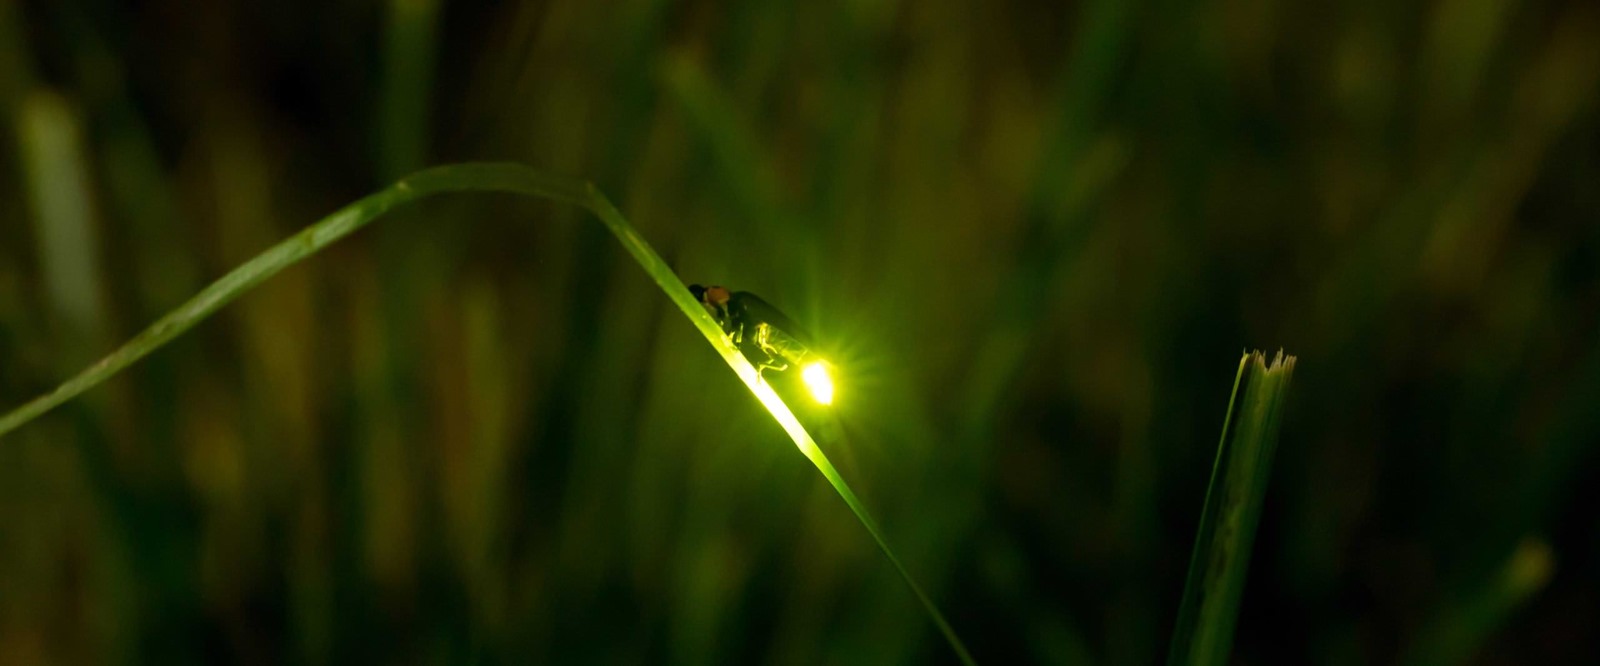 Où et quand observer des lucioles - Notre Nature